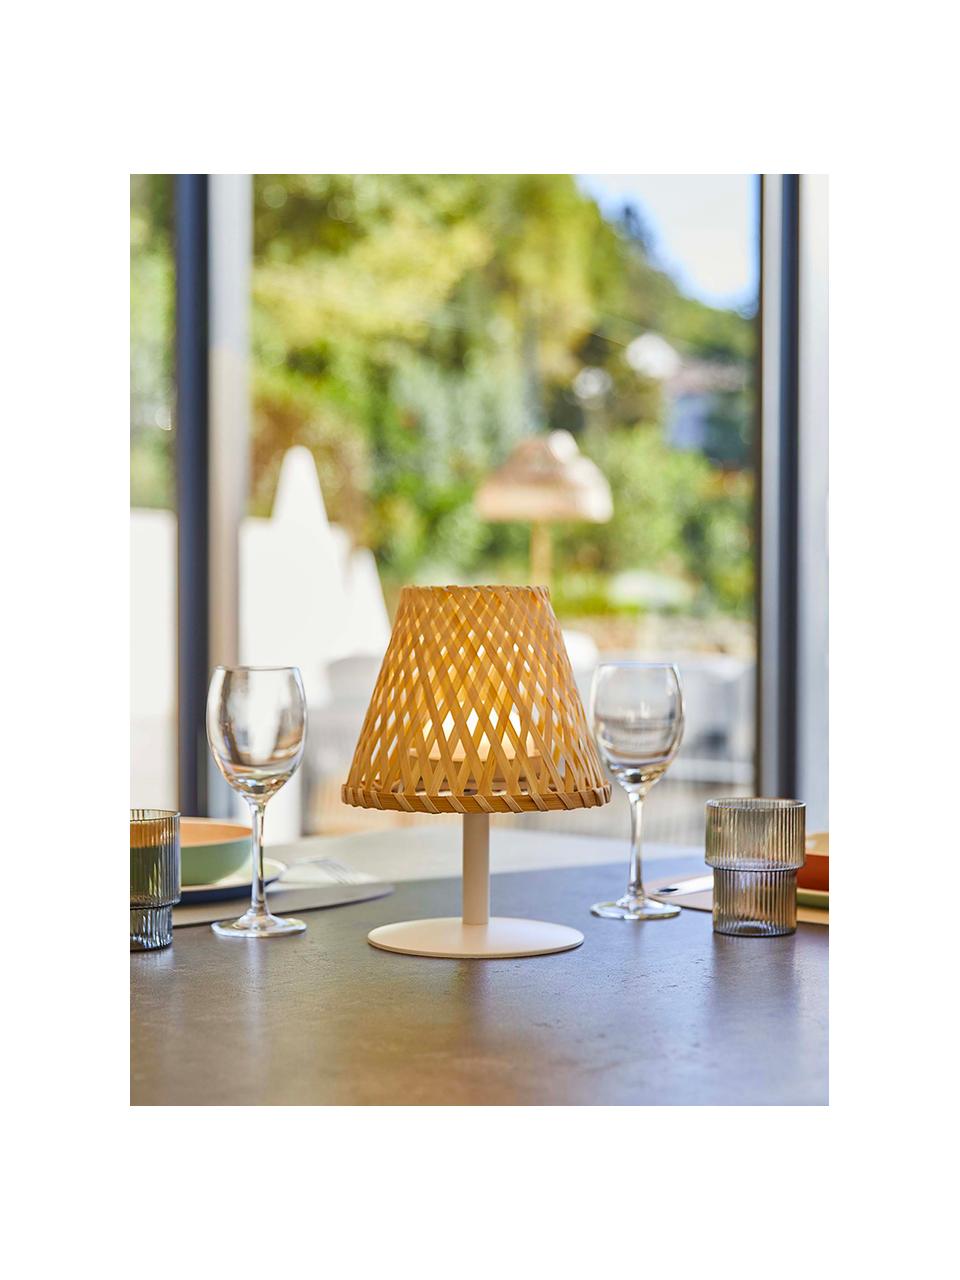 Přenosná exteriérová stolní LED lampa Ibiza, stmívatelná, Bambusové dřevo, bílá, Ø 19 cm, V 25 cm